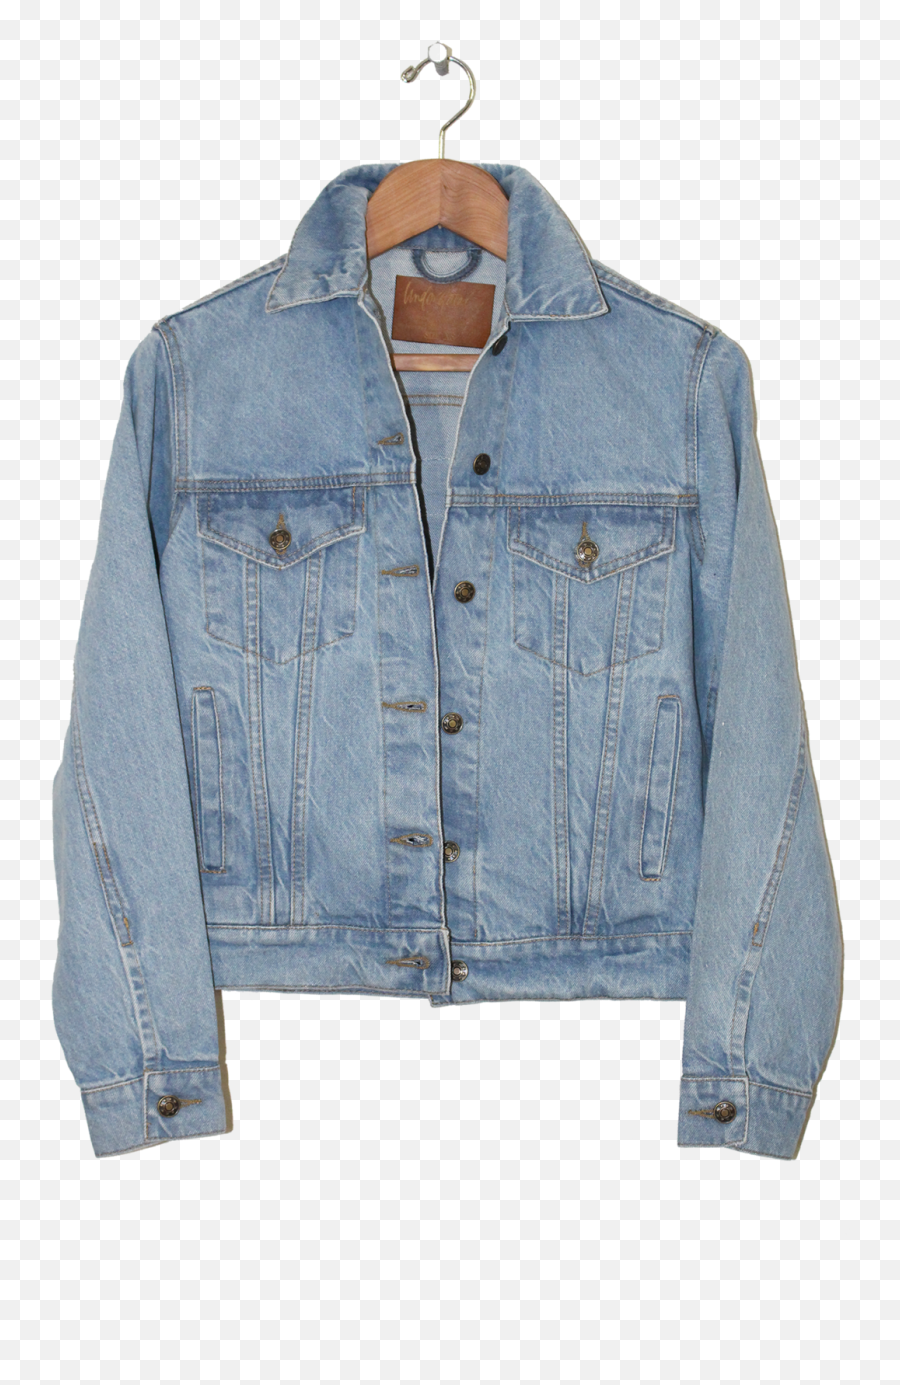 Jeans Jacket Png Free Download Arts - Transparent Denim Jacket Png,Jacket Png